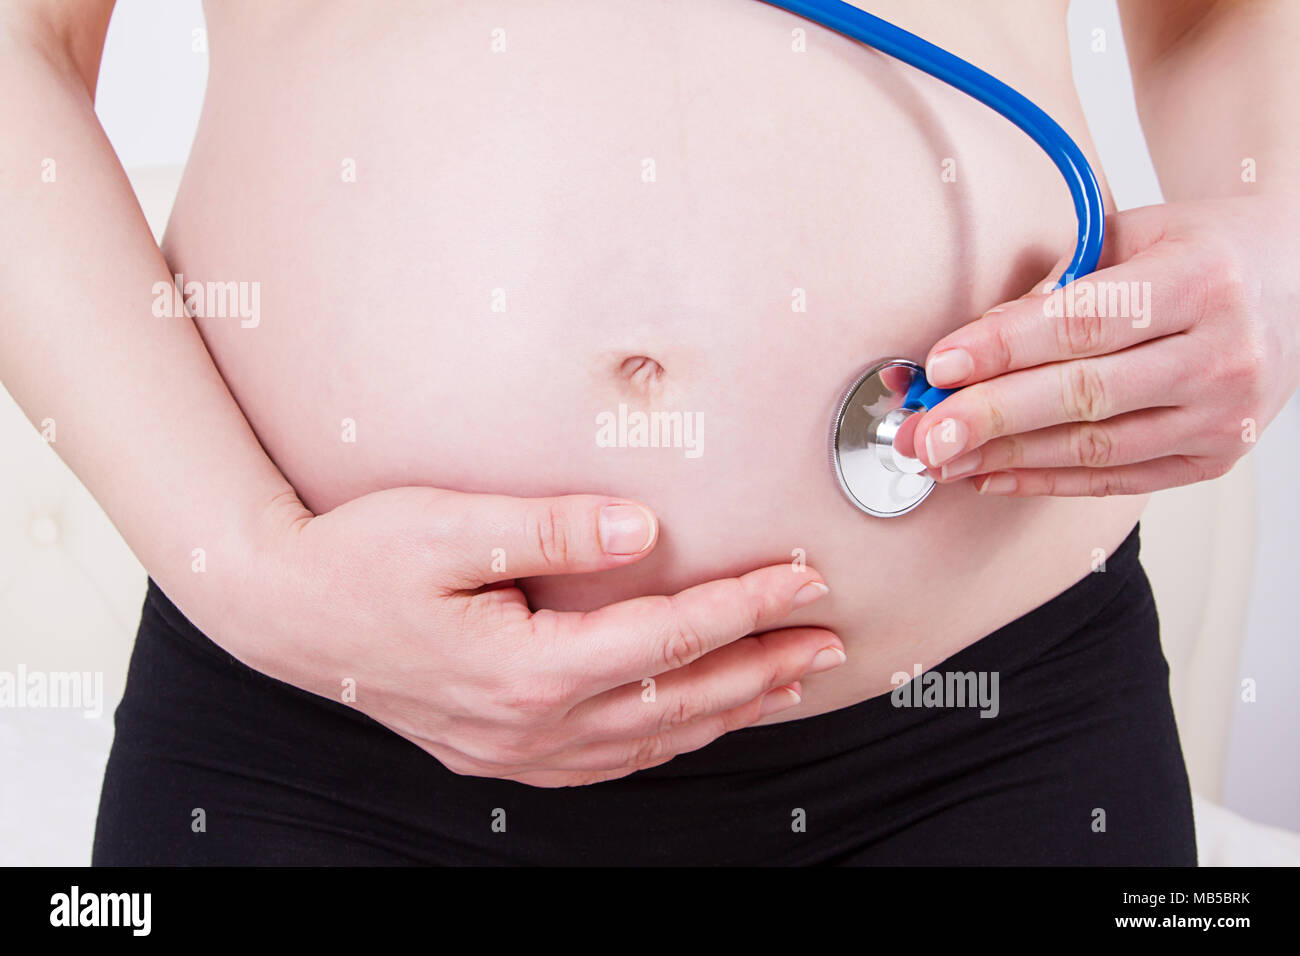 Image de femme enceinte de toucher son gros ventre. Close up. La